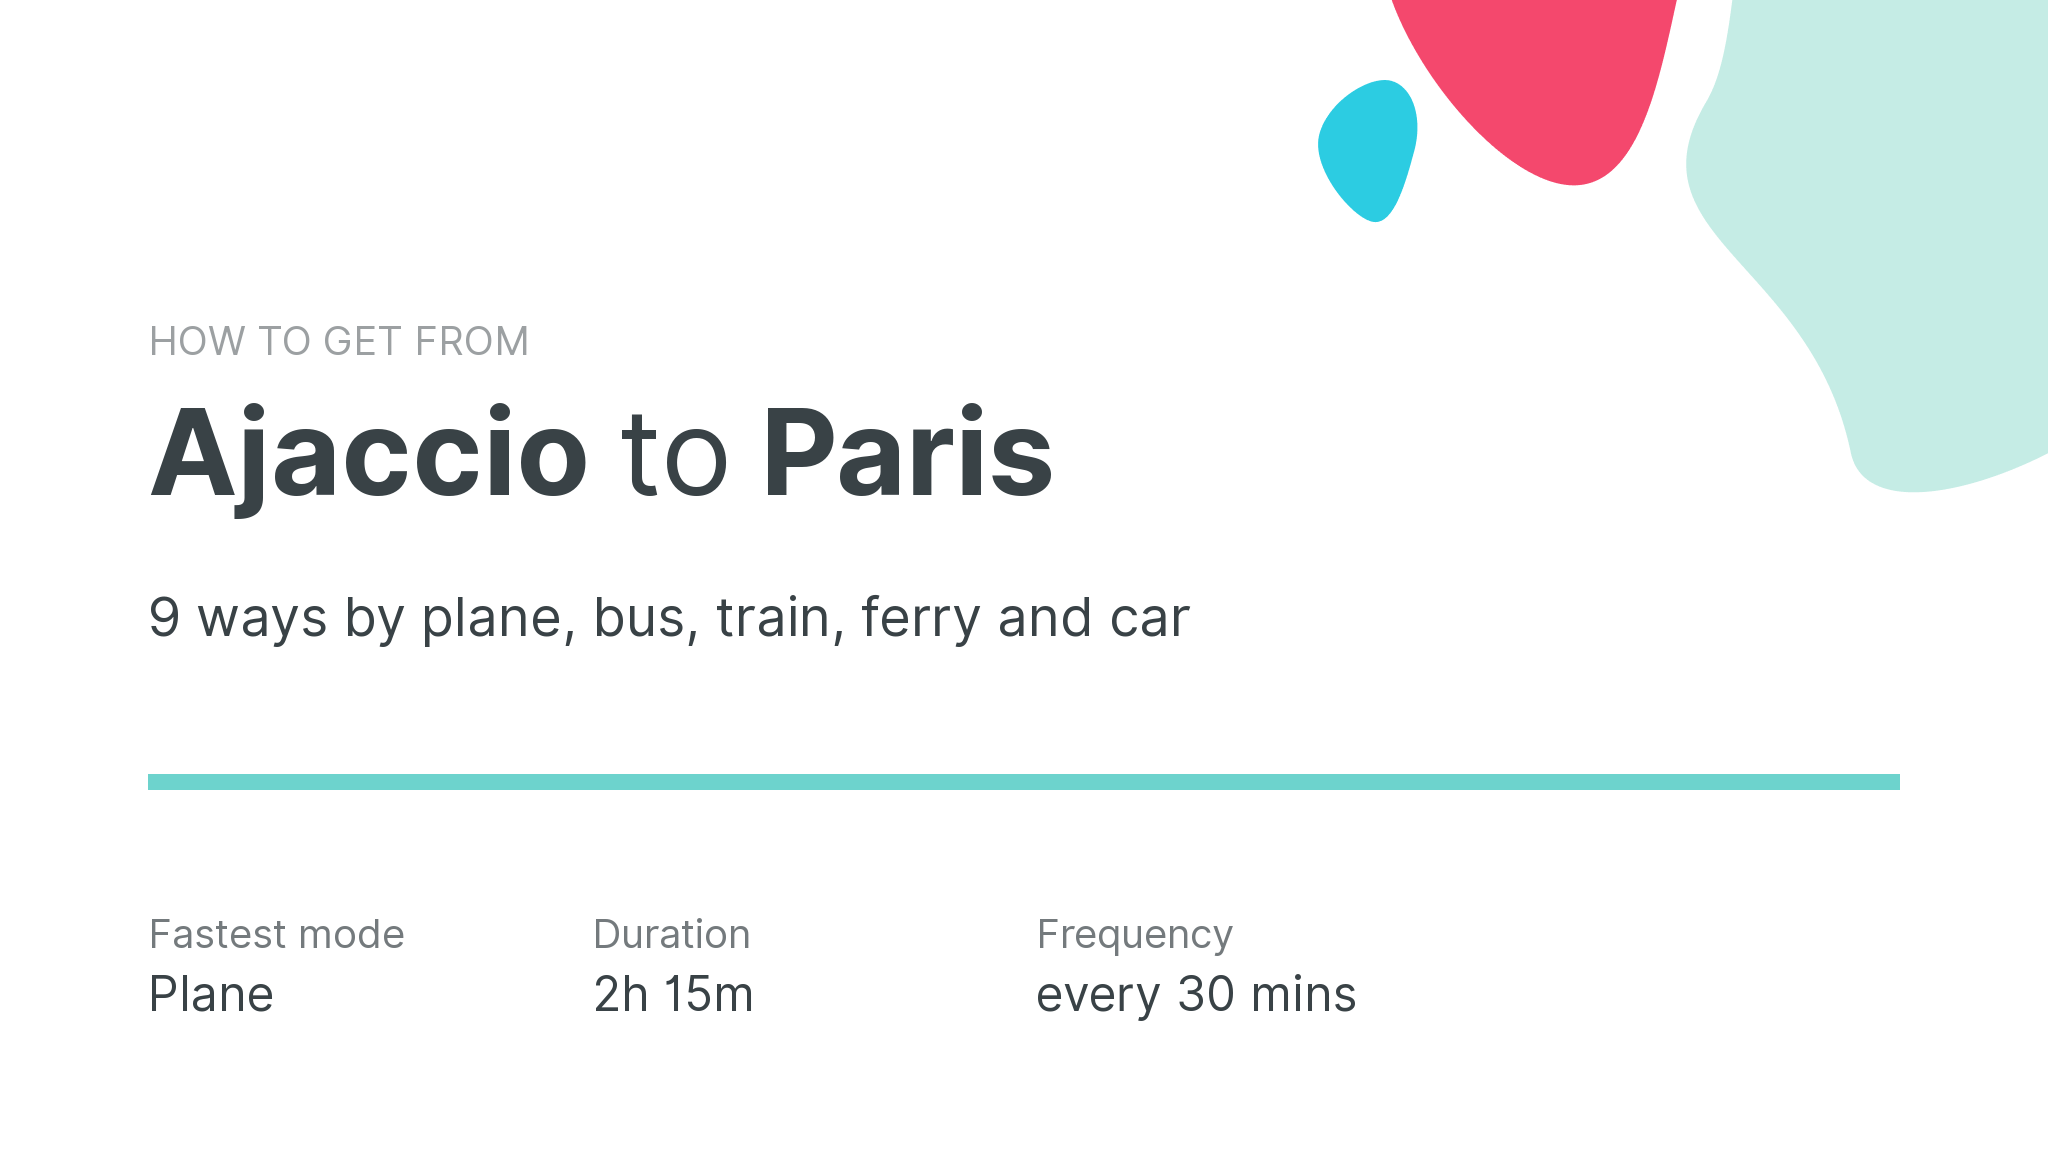 How do I get from Ajaccio to Paris